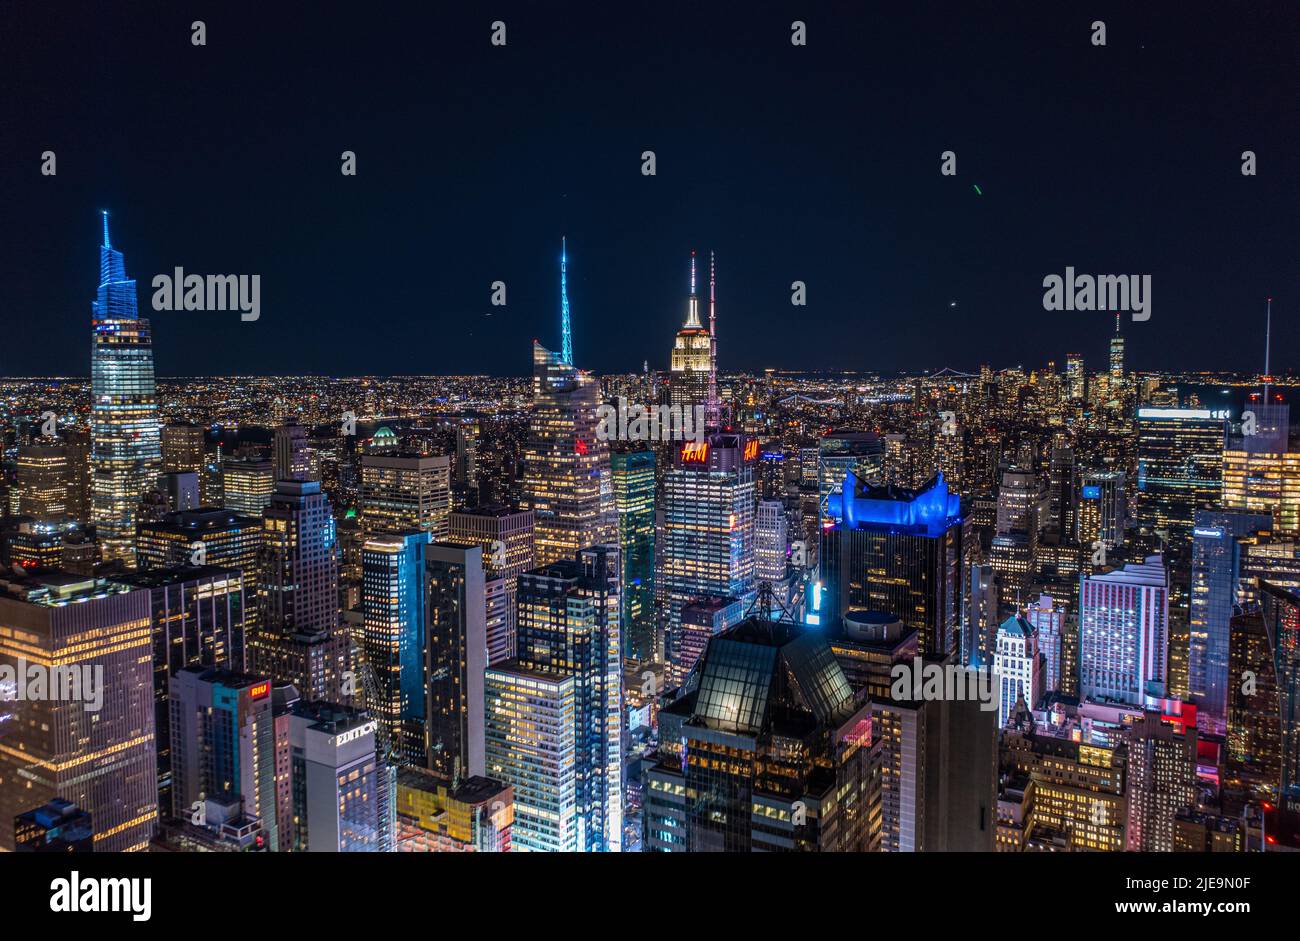 Tausende von Lichtern in der großen Stadt in der Nacht. Luftpanoramabbild von hoch aufragenden, farbig beleuchteten Gebäuden. Manhattan, New York City, USA Stockfoto